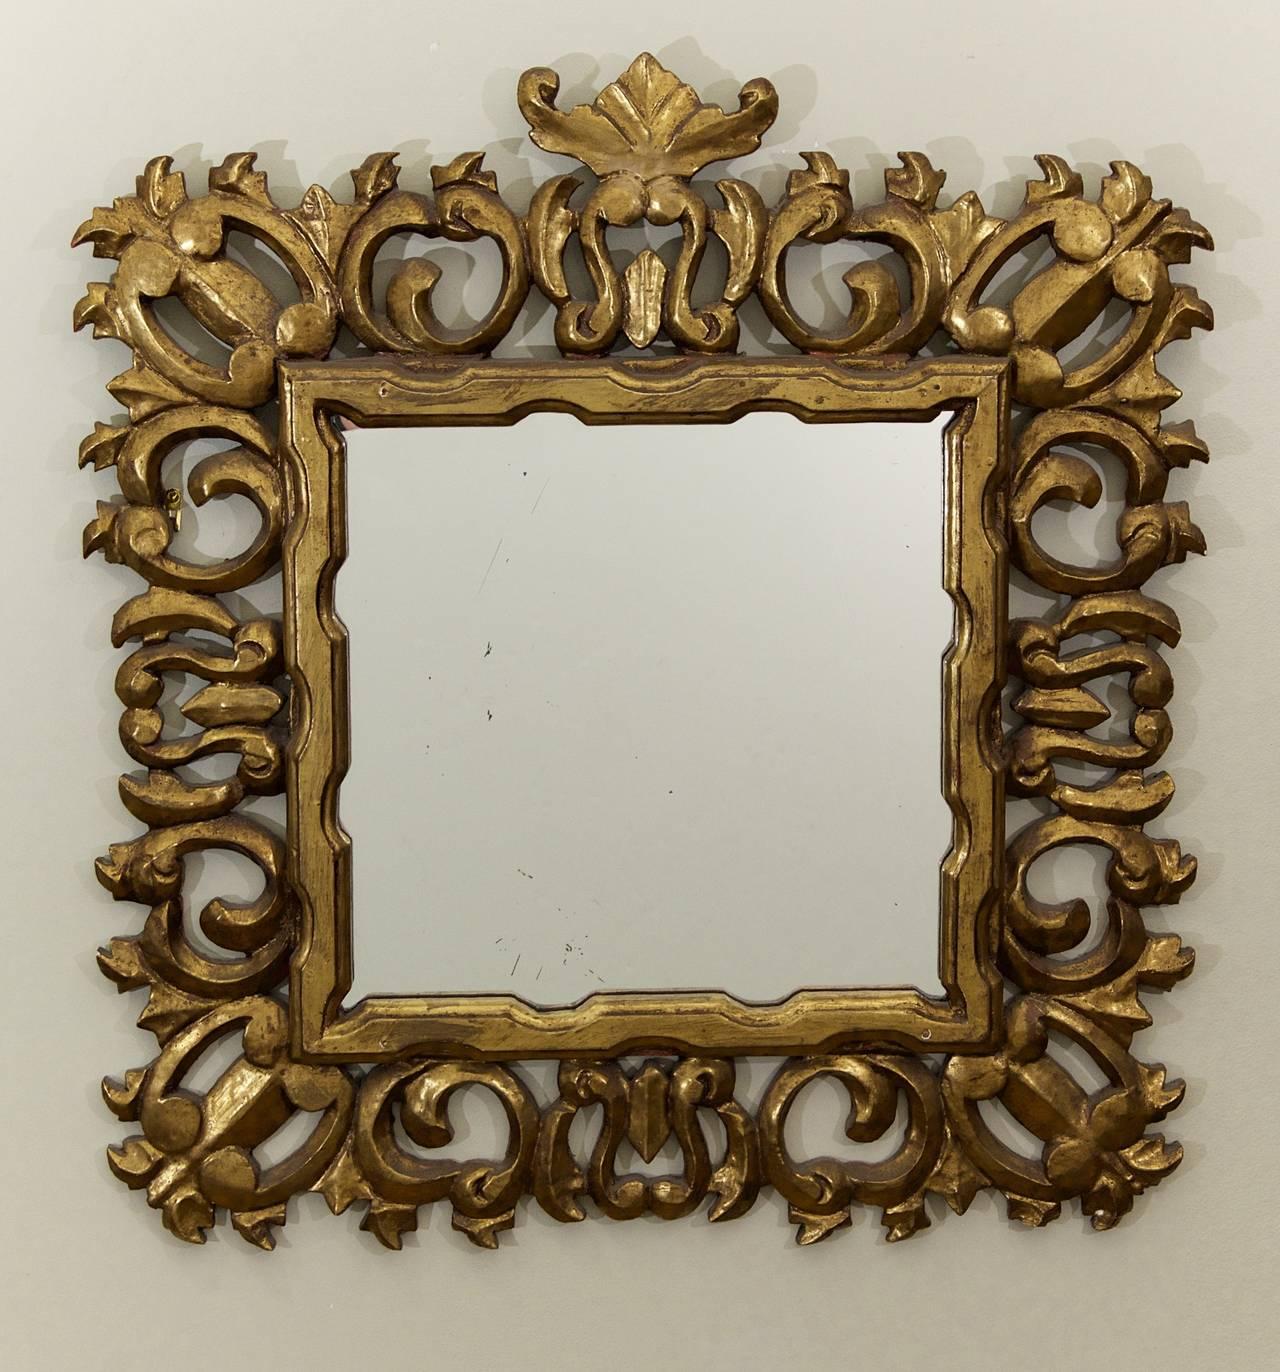 Excellent miroir Hollywood Regency, le cadre sculpté surdimensionné en bois doré gessoïsé. Dramatique et bien formé.